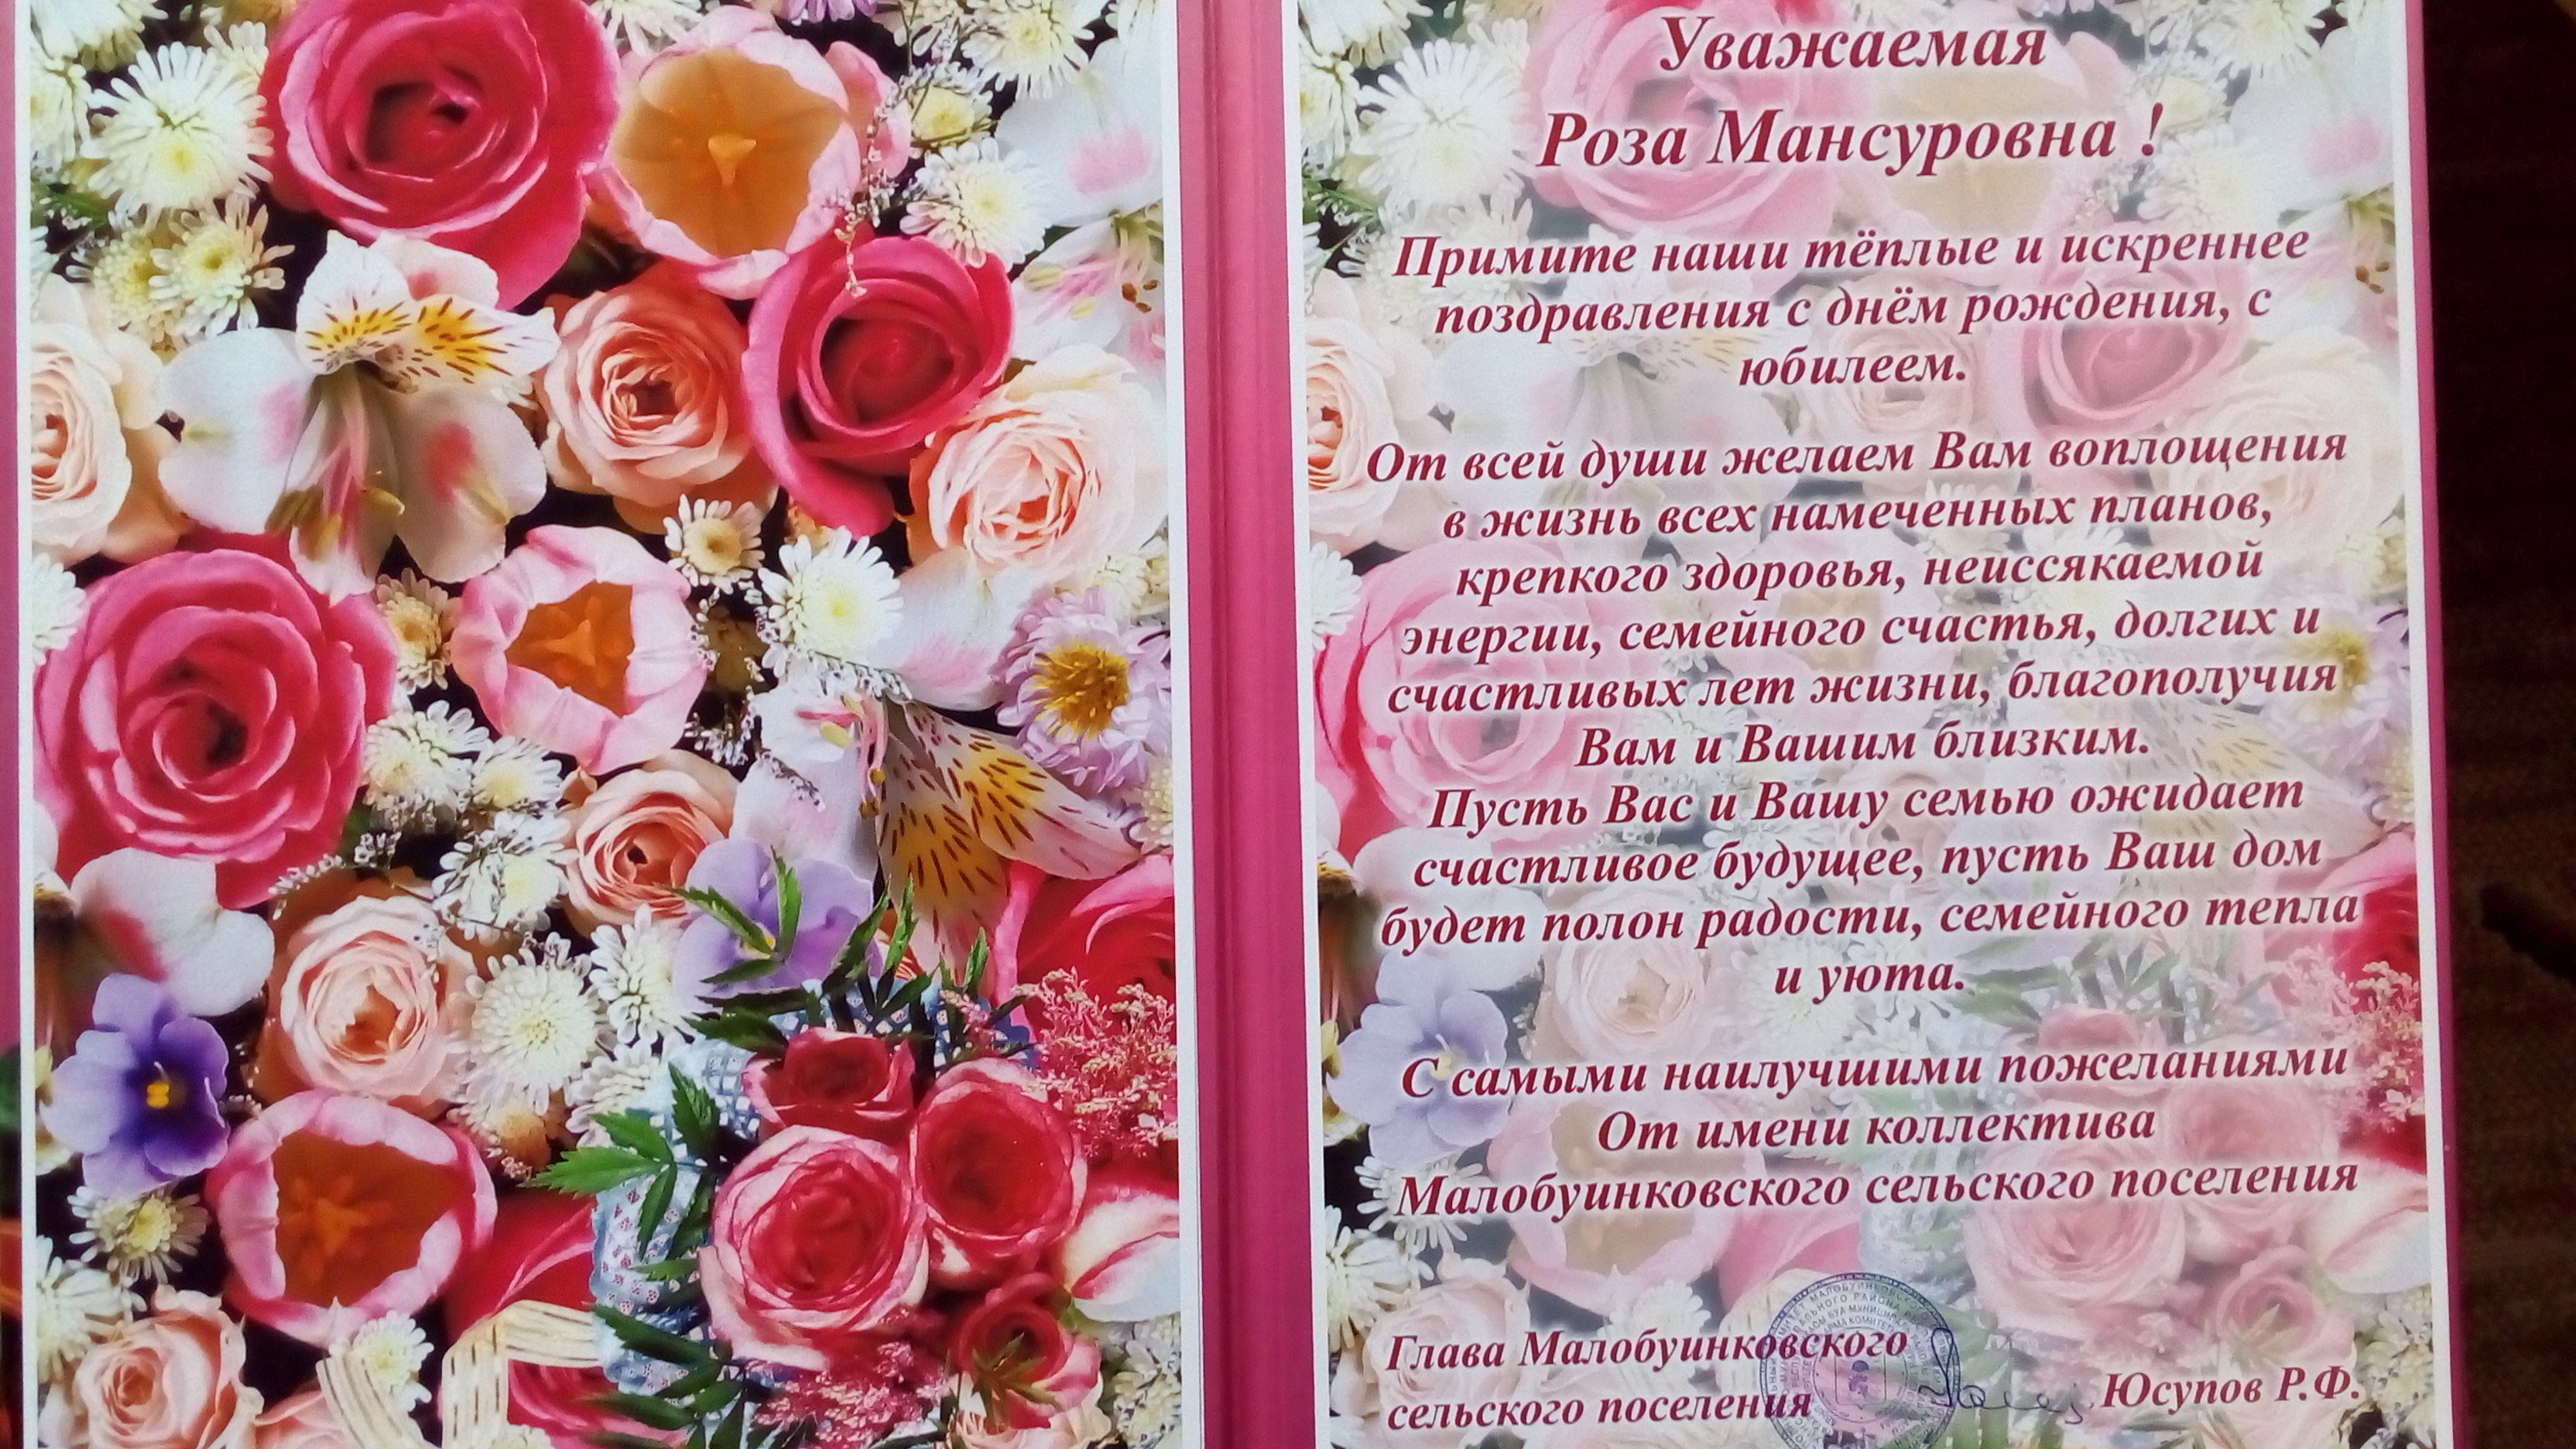 Поздравление на чувашском языке с юбилеем. Открытка с юбилеем. Поздравление с юбилеем. Поздравление с юбилеем женщине. Поздравление с юбилеем лет женщине.